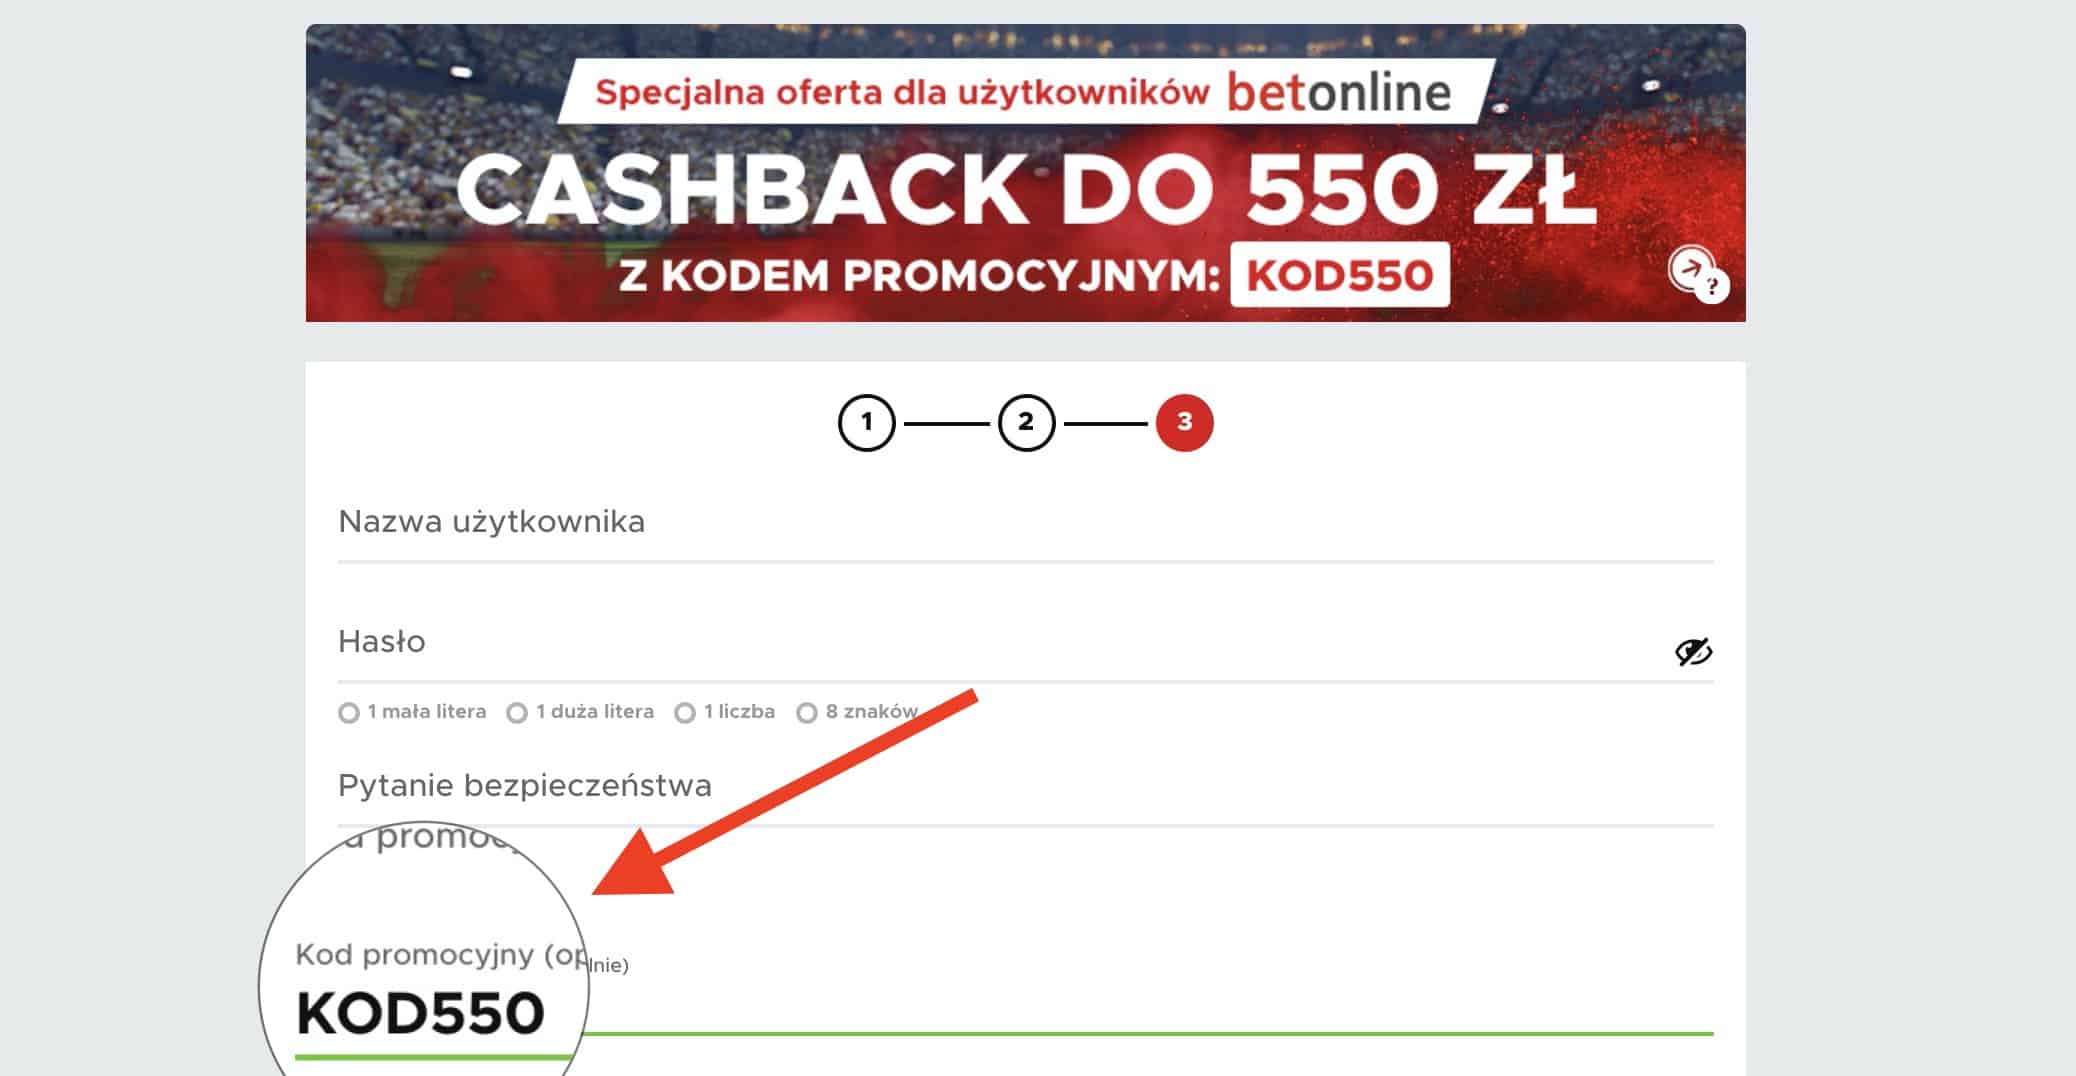 Betclic kod promocyjny. KOD550 - kasa na start to nawet 550 PLN! Jedyny taki cashback w Polsce!